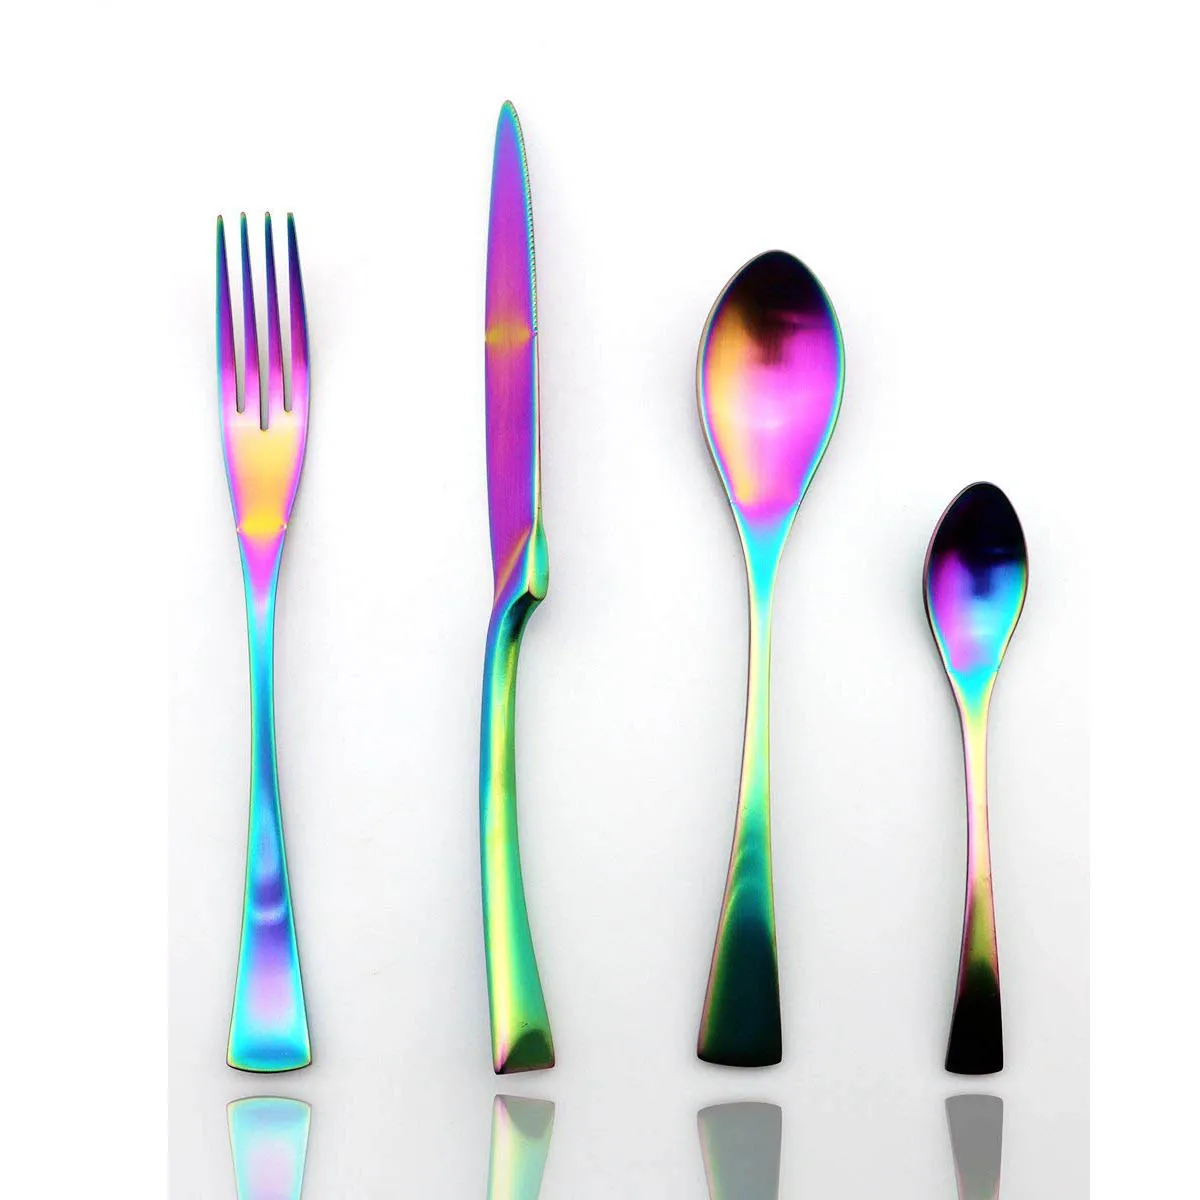 24 шт. стильные столовые приборы набор столовых приборов столовые приборы 304 Нержавеющая сталь посуда Кухня посуда нож, вилки ложки набор посуды - Цвет: Rainbow